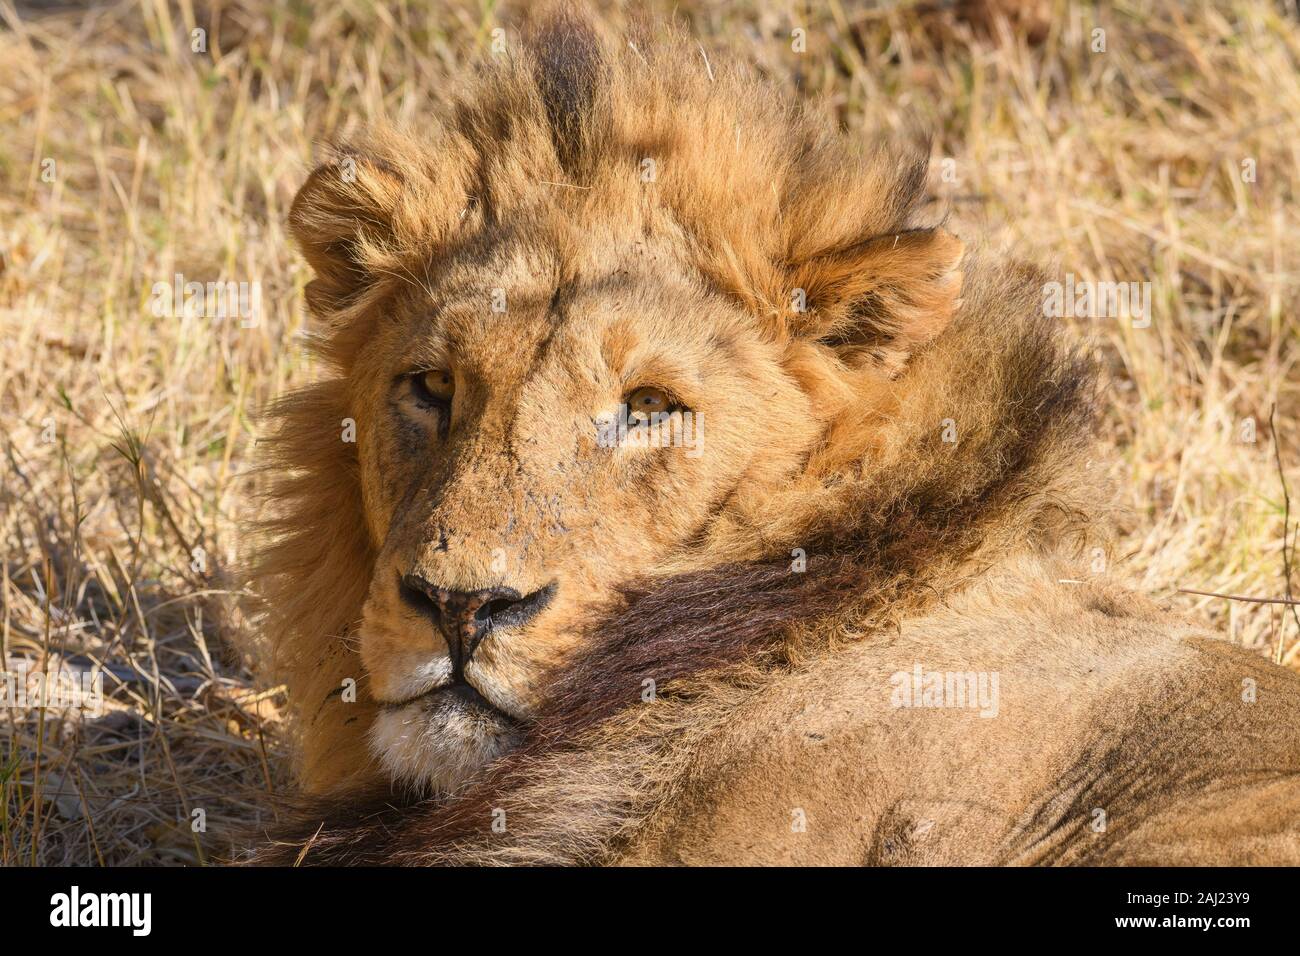 León macho (Panthera leo) descansando durante el calor del día, Khwai reserva privada, el delta del Okavango, Botswana, África Foto de stock